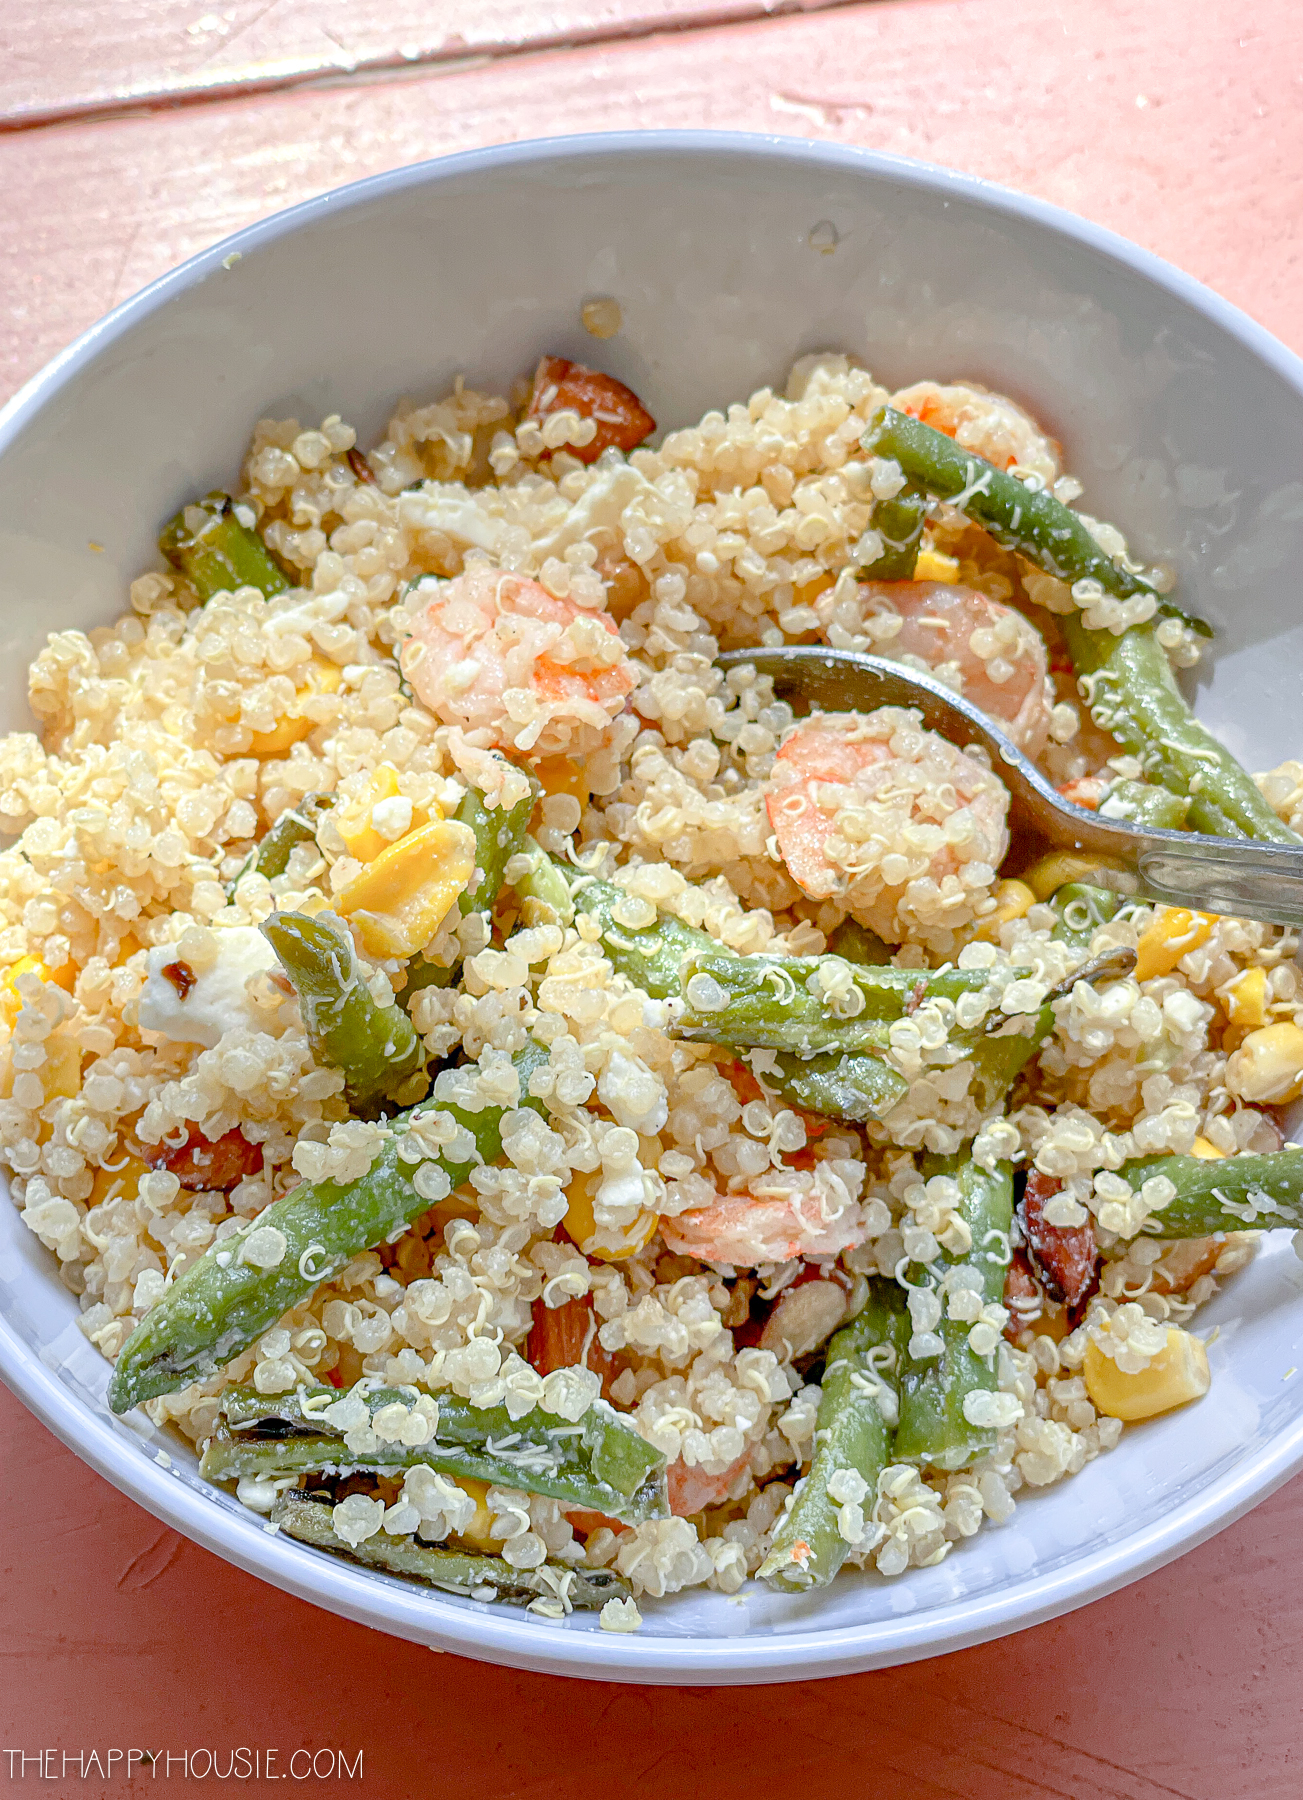 A bowl full of shrimp and quinoa salad.